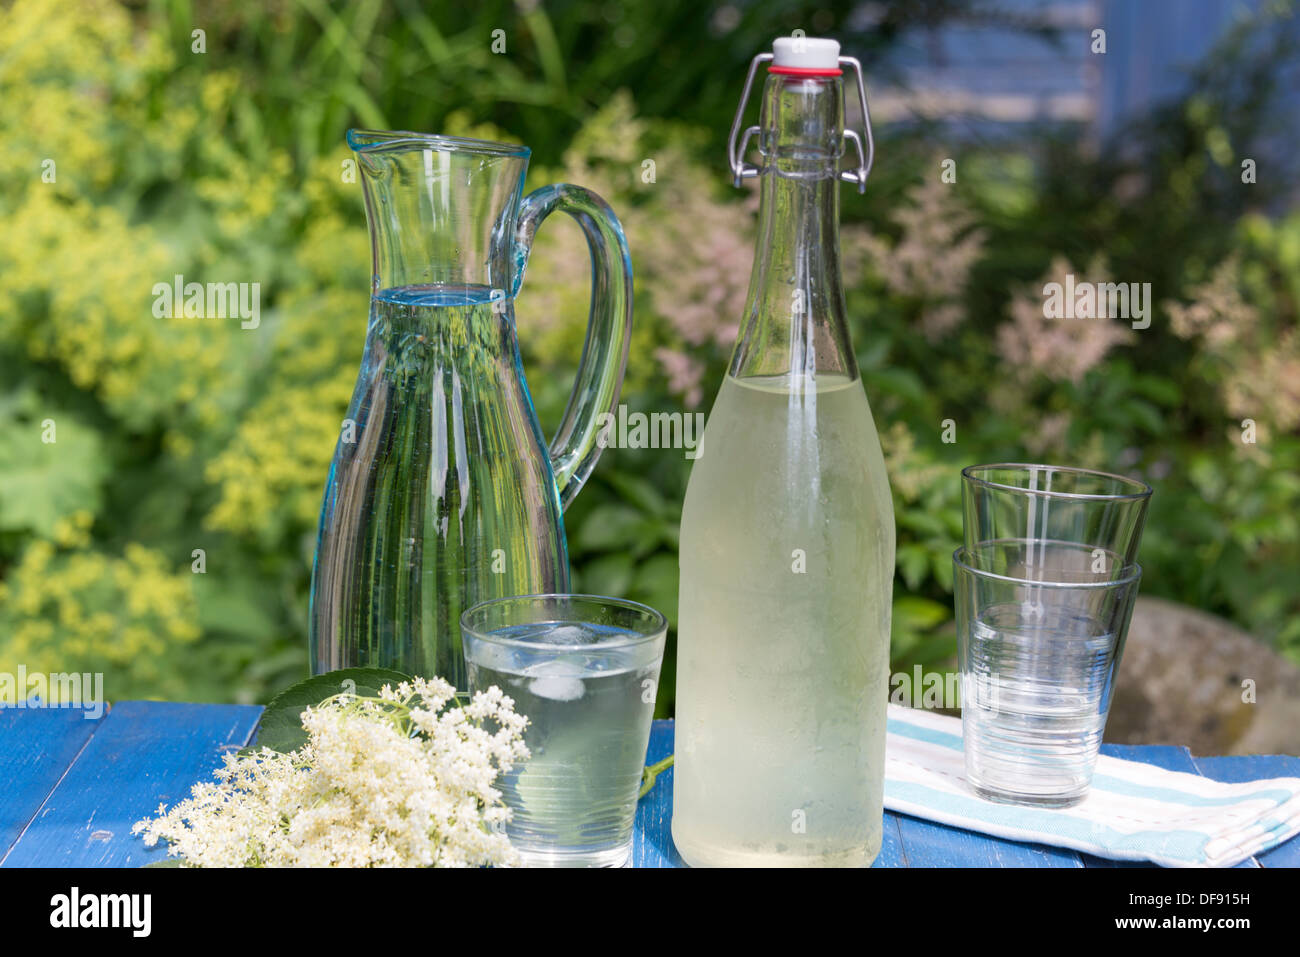 Elderflower caseros cordial en un día de verano. En el Reino Unido. Foto de stock